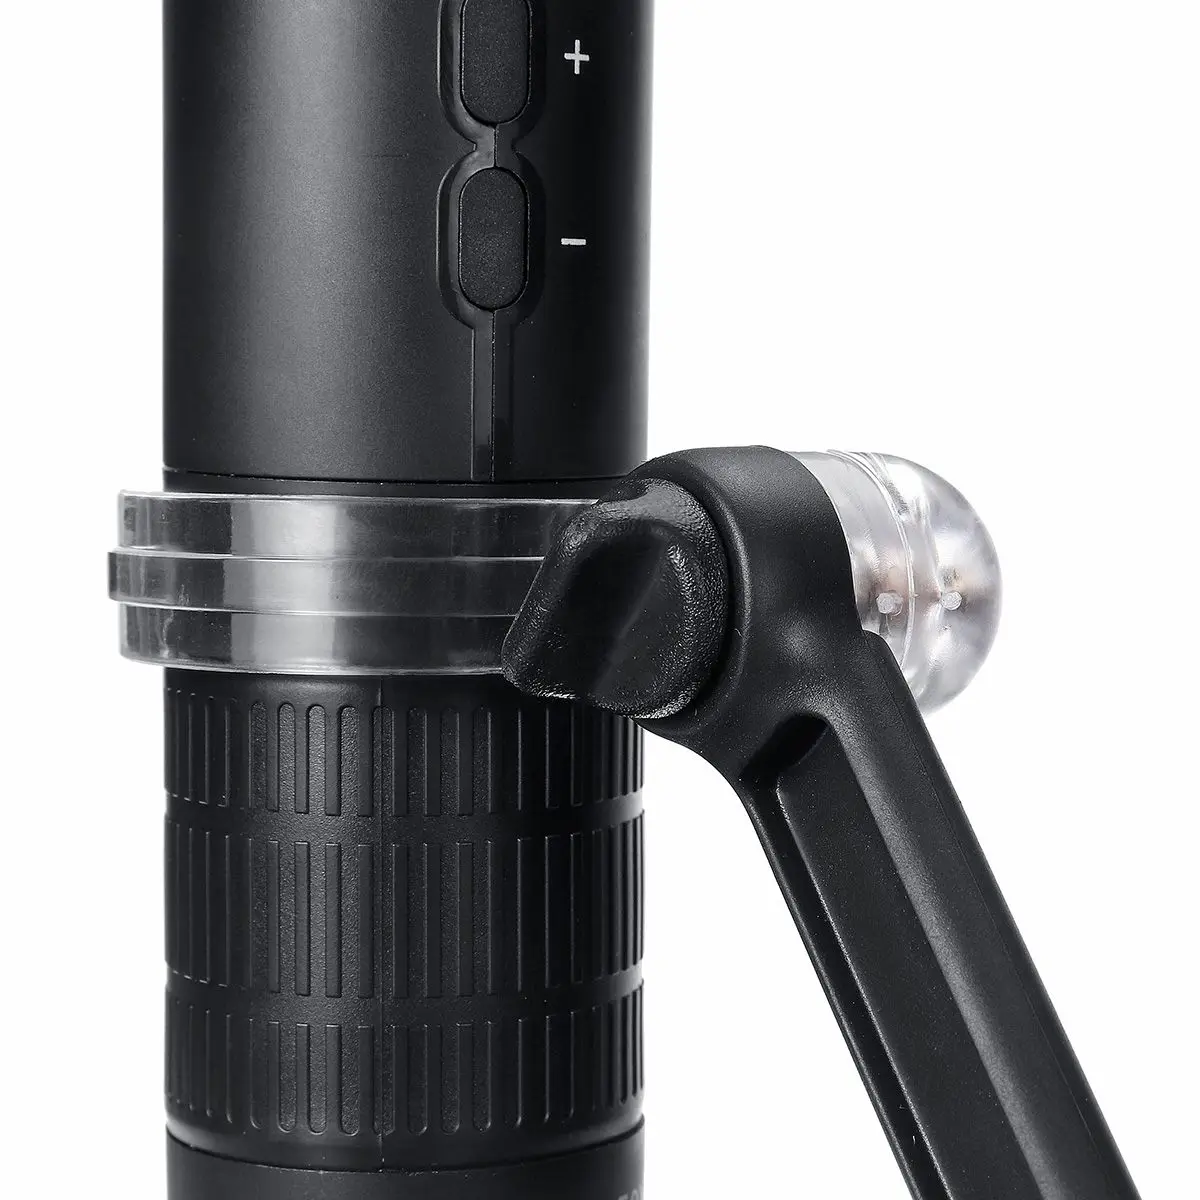 2MP цифровой wifi микроскоп 1000X Лупа камера 8 светодиодный с подставкой для беспроводного смартфона мобильный телефон осмотр